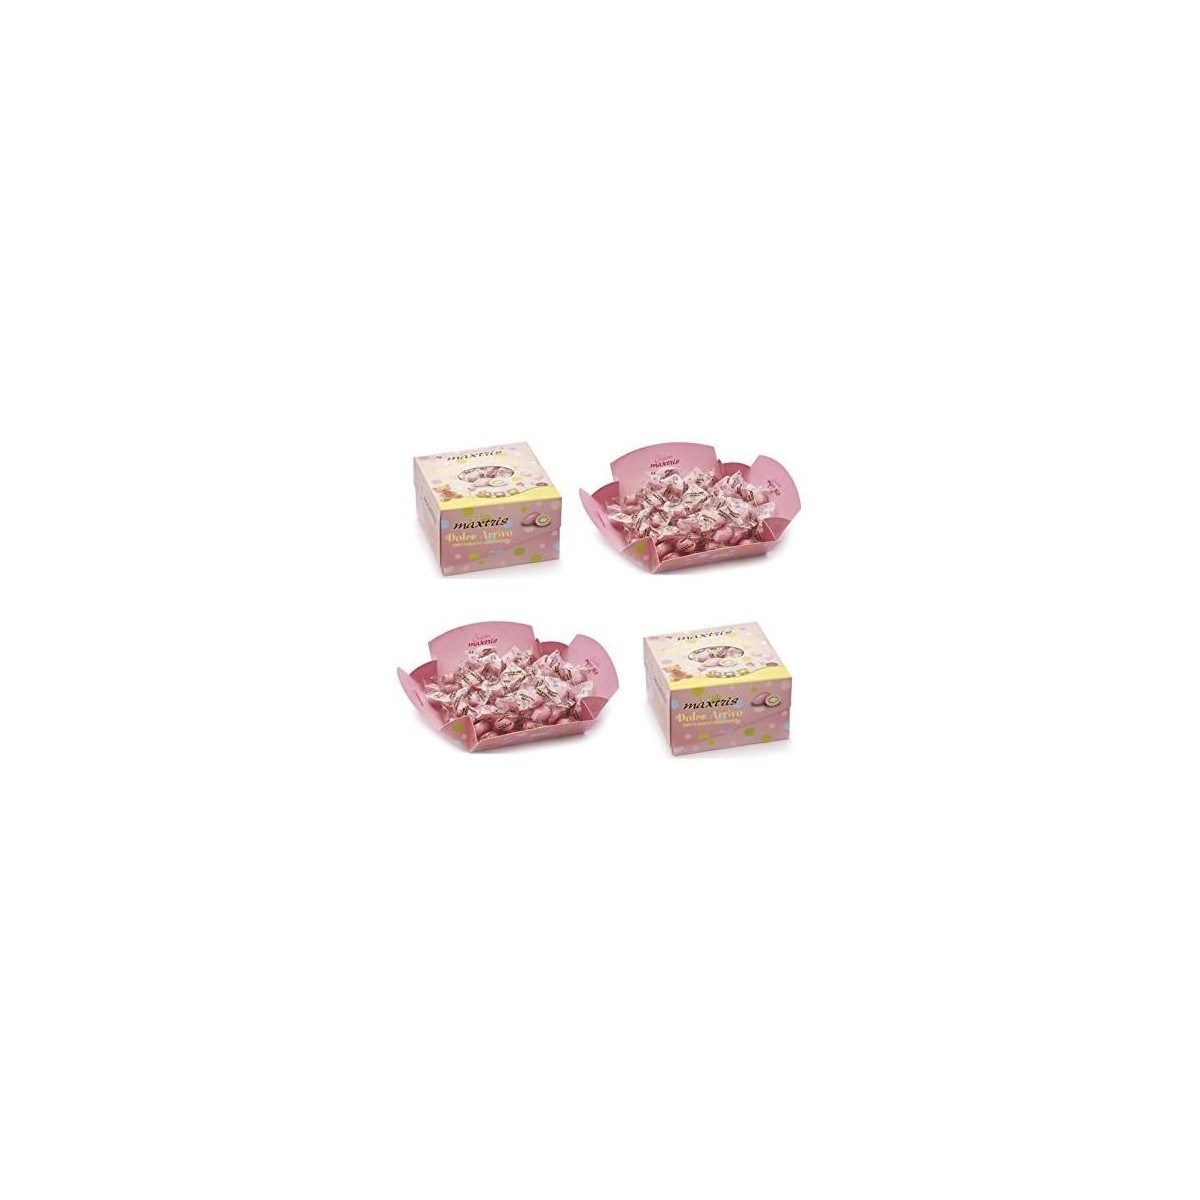 Confetti Dolce Arrivo, rosa, Maxtris, da 2kg, per confettate golose